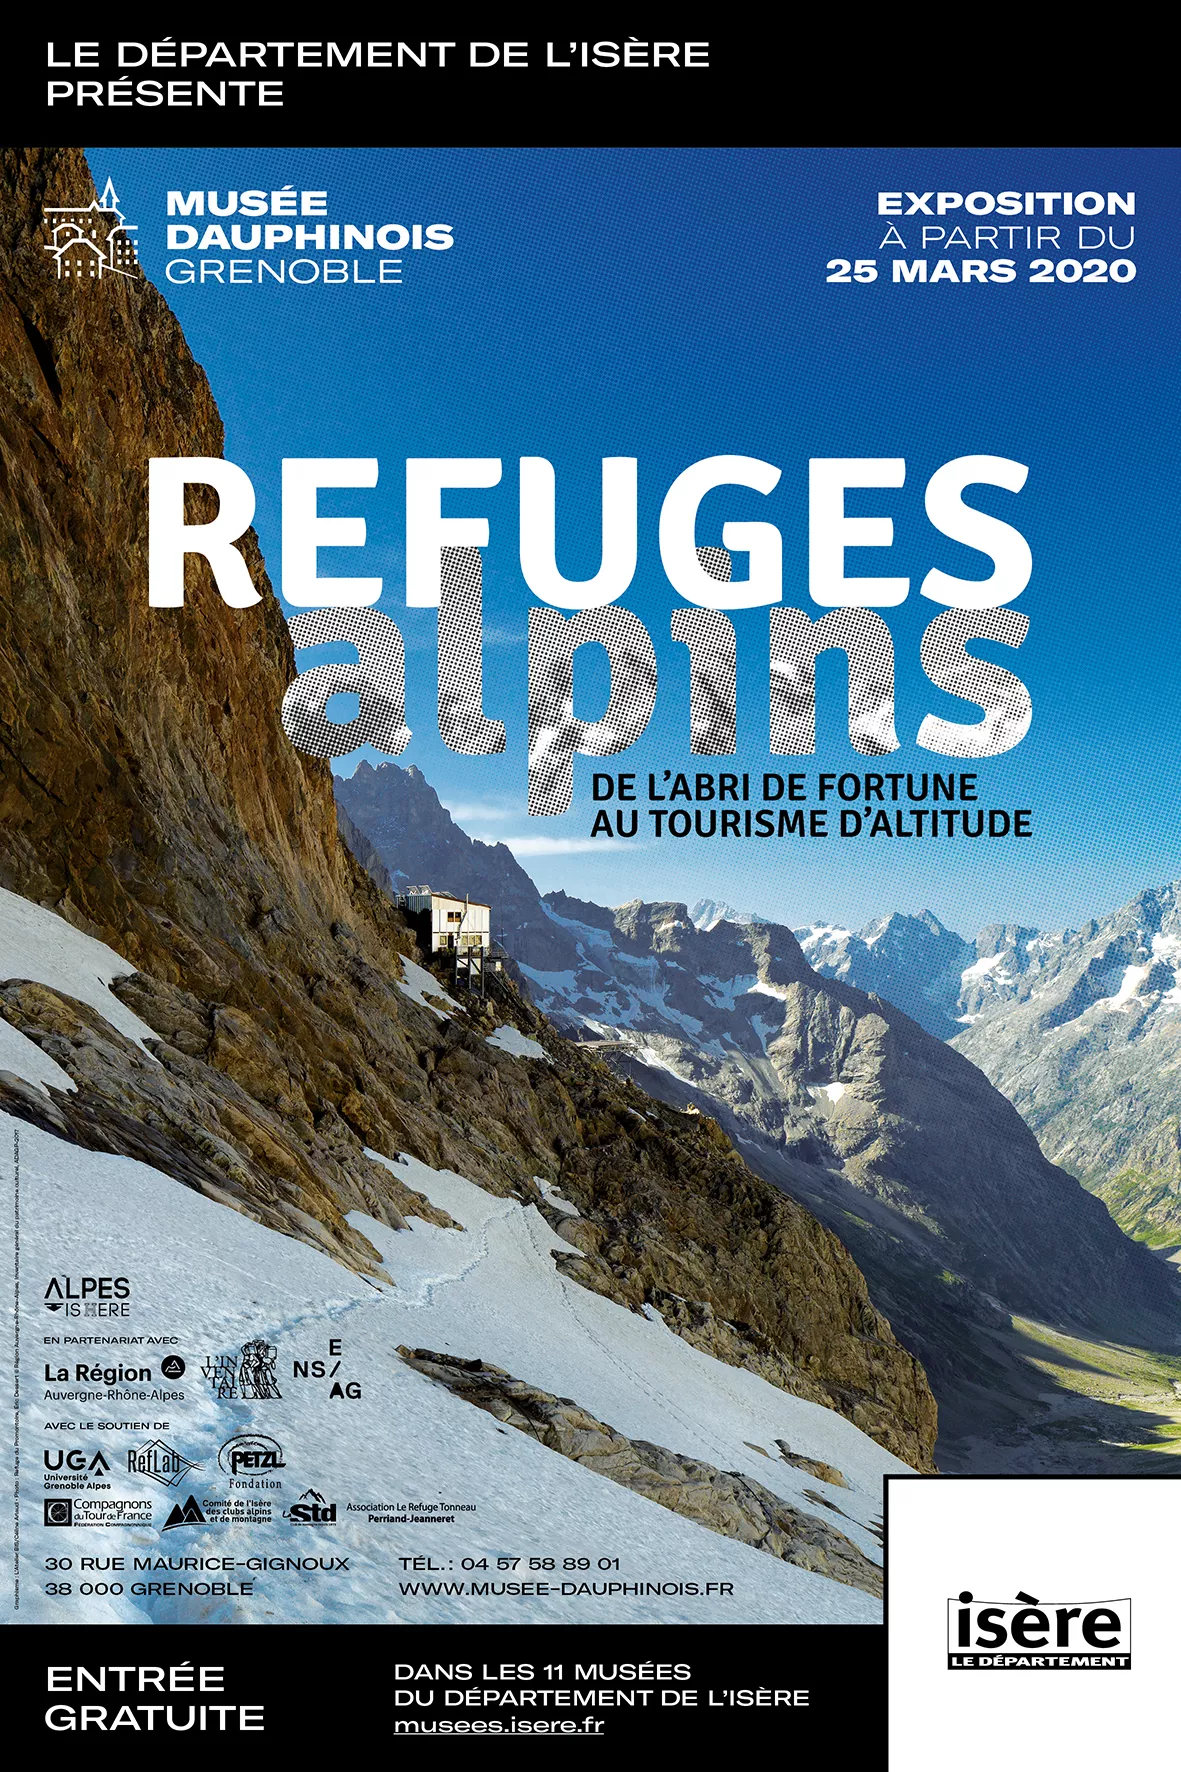 Affiche de l'expo "Refuges alpins"